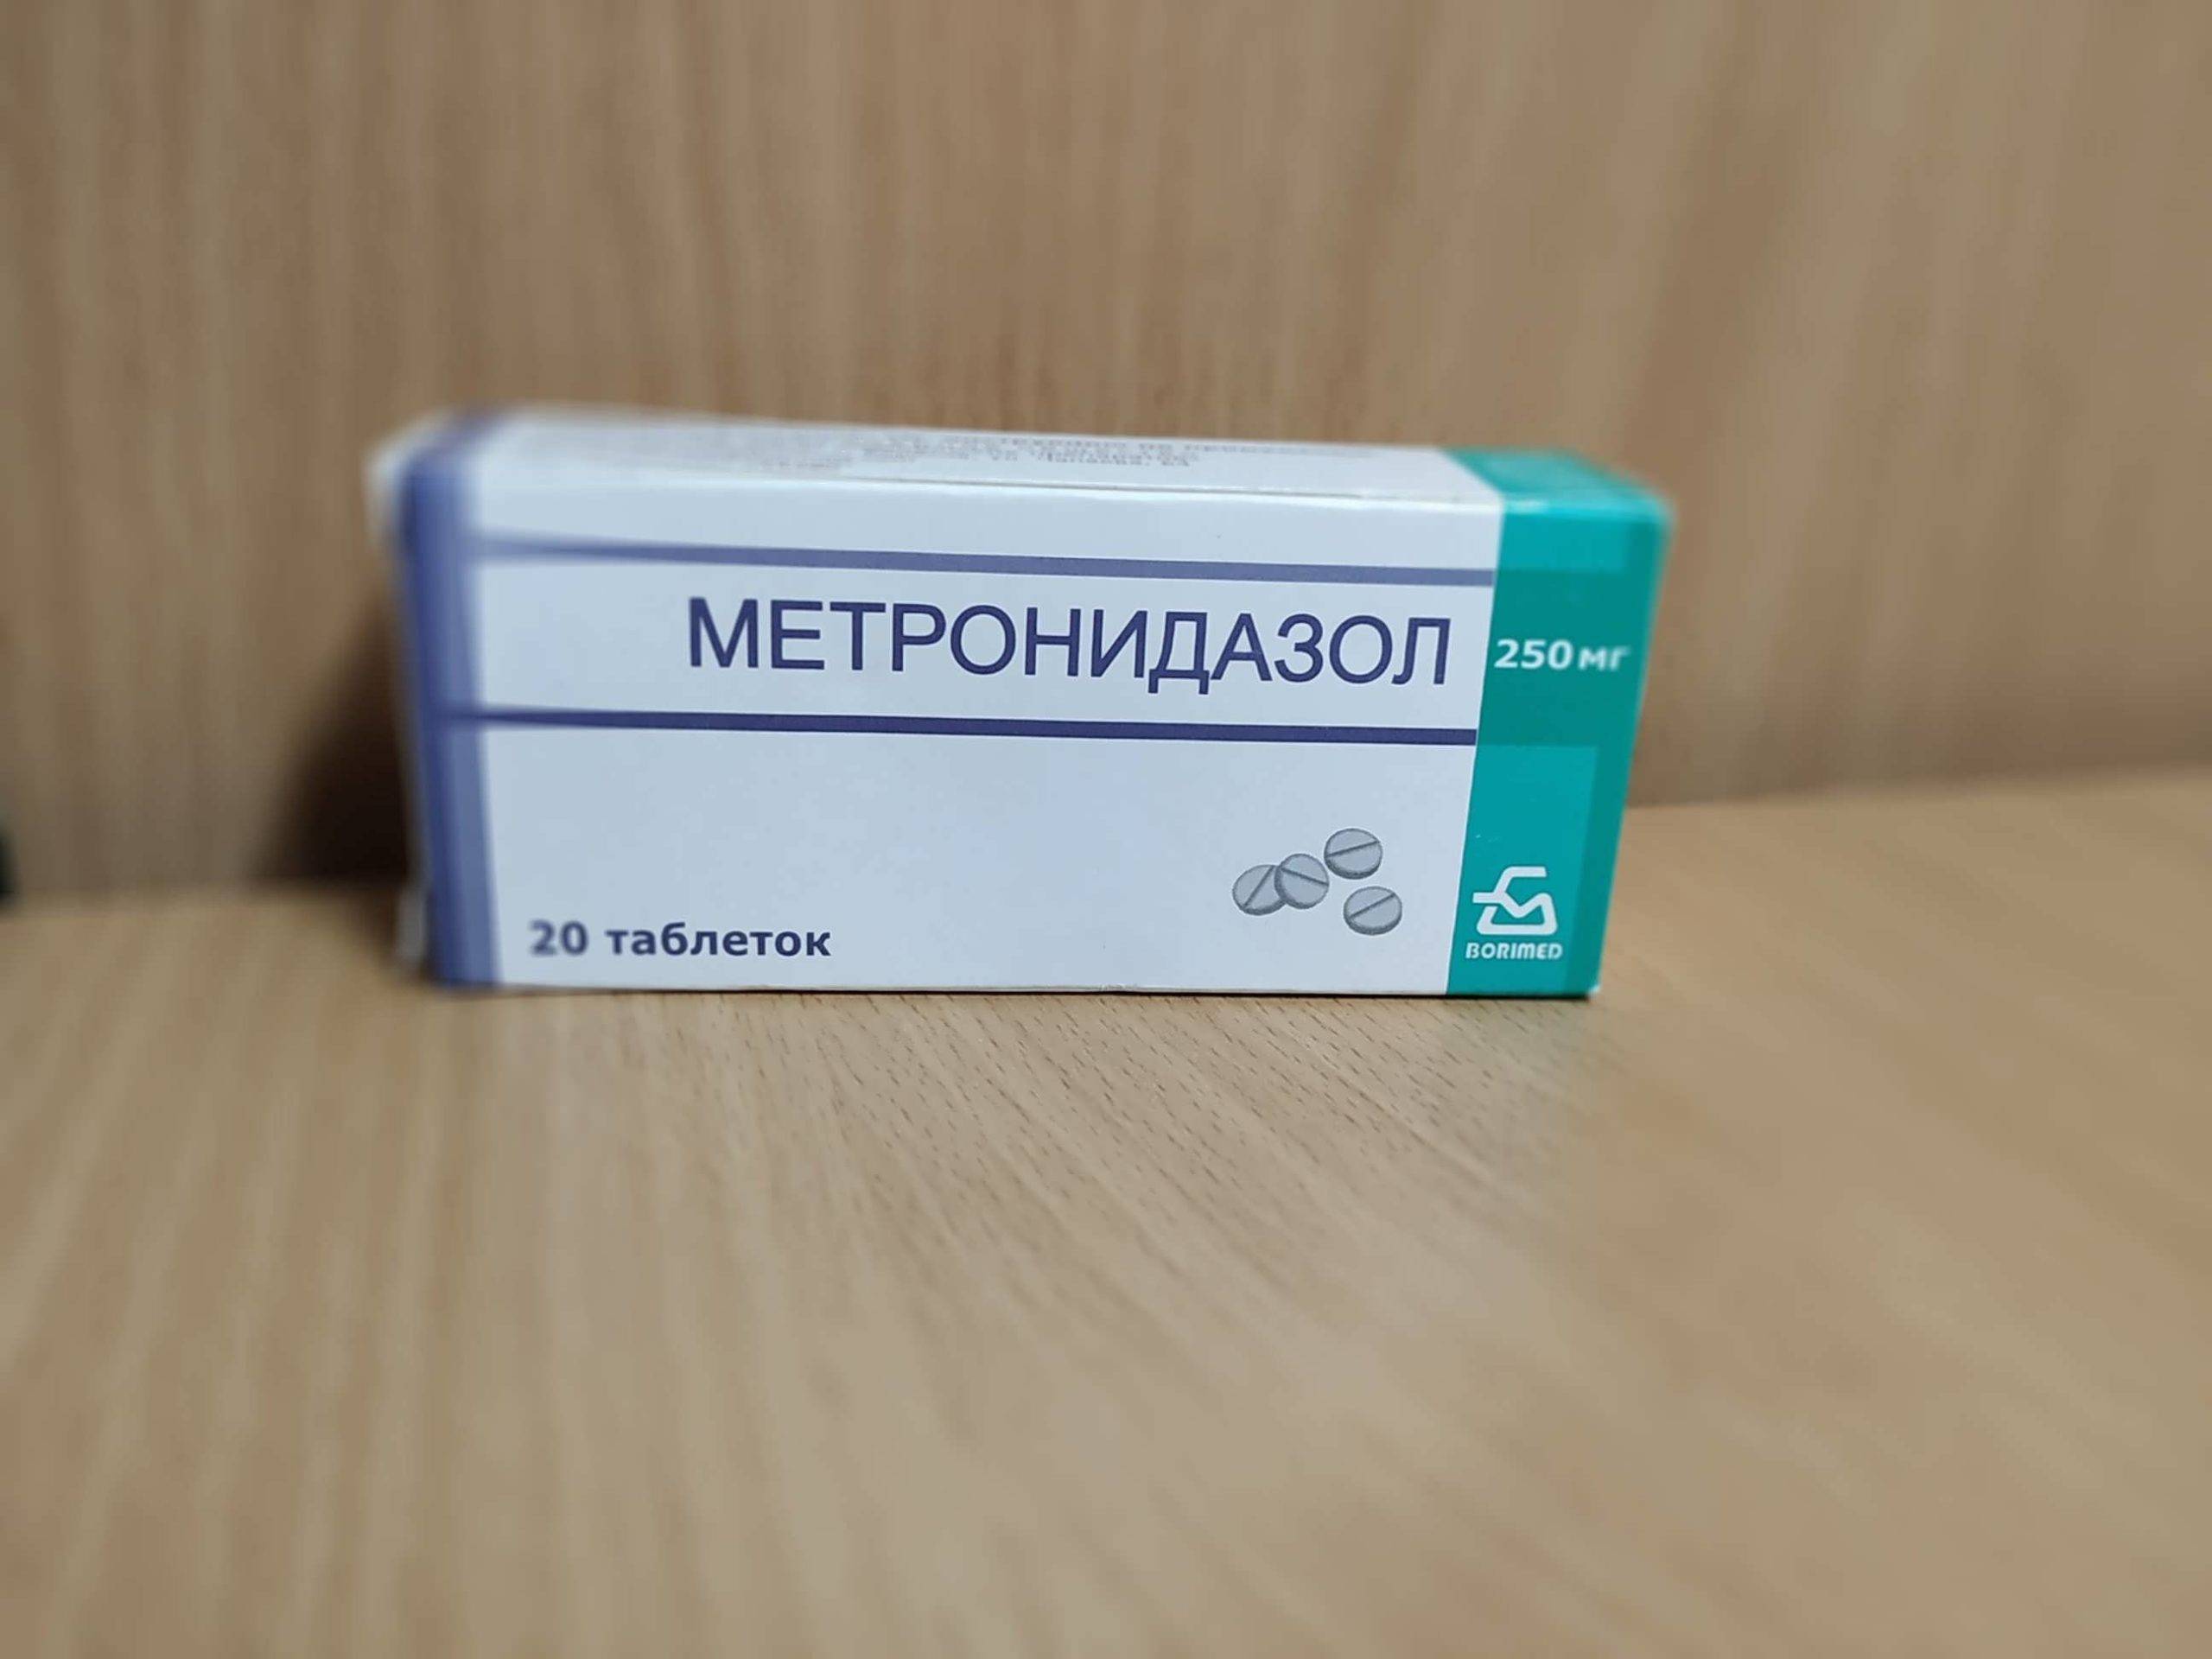 метронидазол фото упаковки